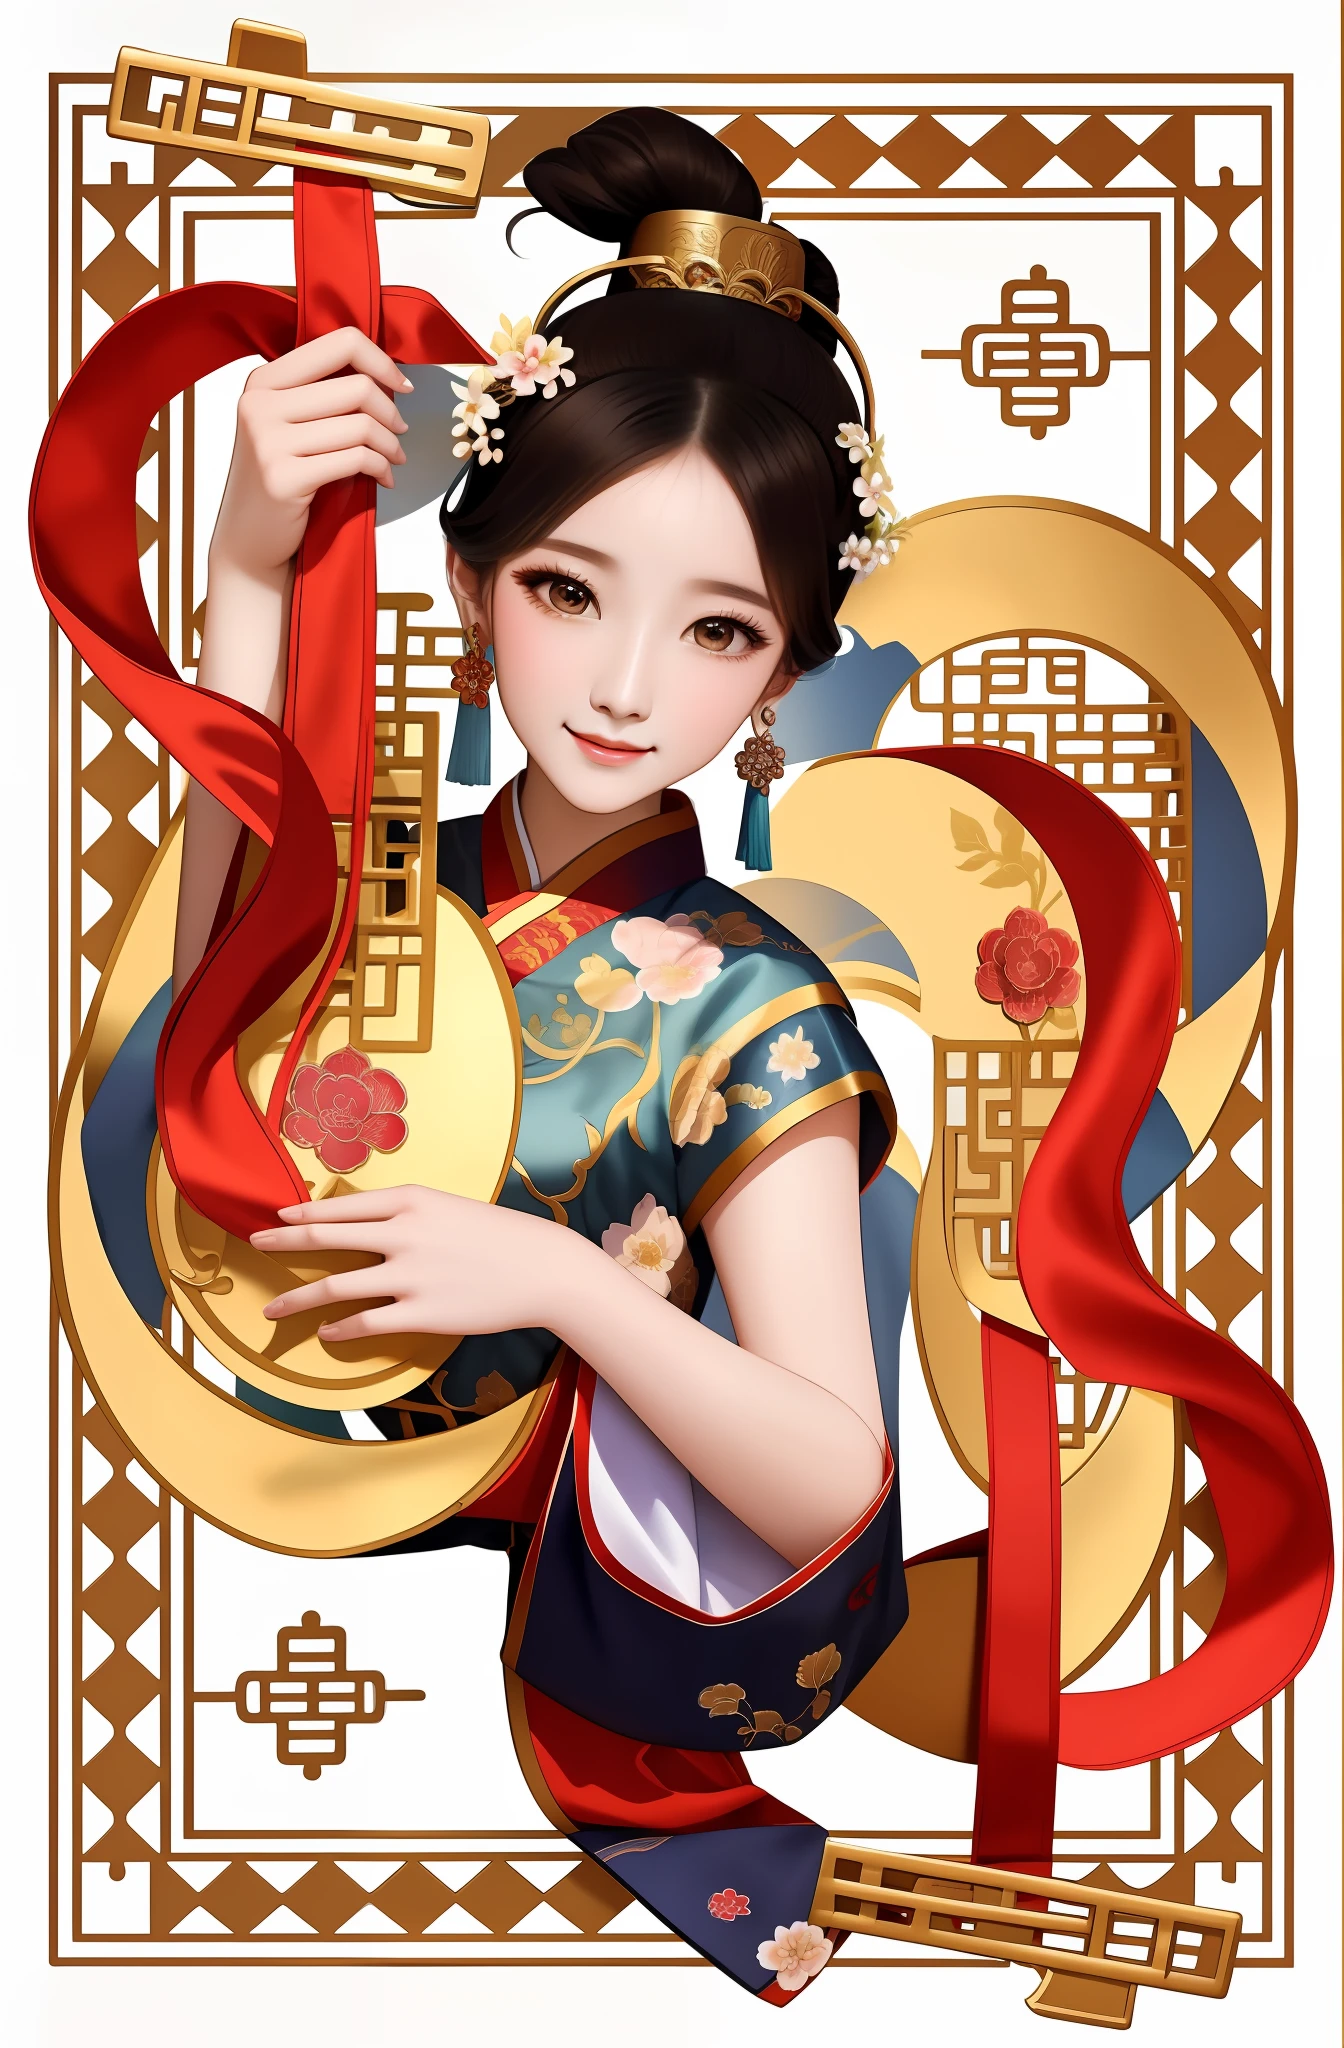 Nahaufnahme einer Frau, die ein Instrument hält, Palast ， mädchen in hanfu, Eine wunderschöne Kunstwerk-Illustration, alte chinesische Schönheit, inspiriert von Wu Bin, Alte chinesische Prinzessin, chinesisches Mädchen, Inspiriert von Song Maojin, alter chinesischer Kunststil, inspiriert von Gong Xian, Kunstwerke im Guviz-Stil, inspiriert von Park Hua